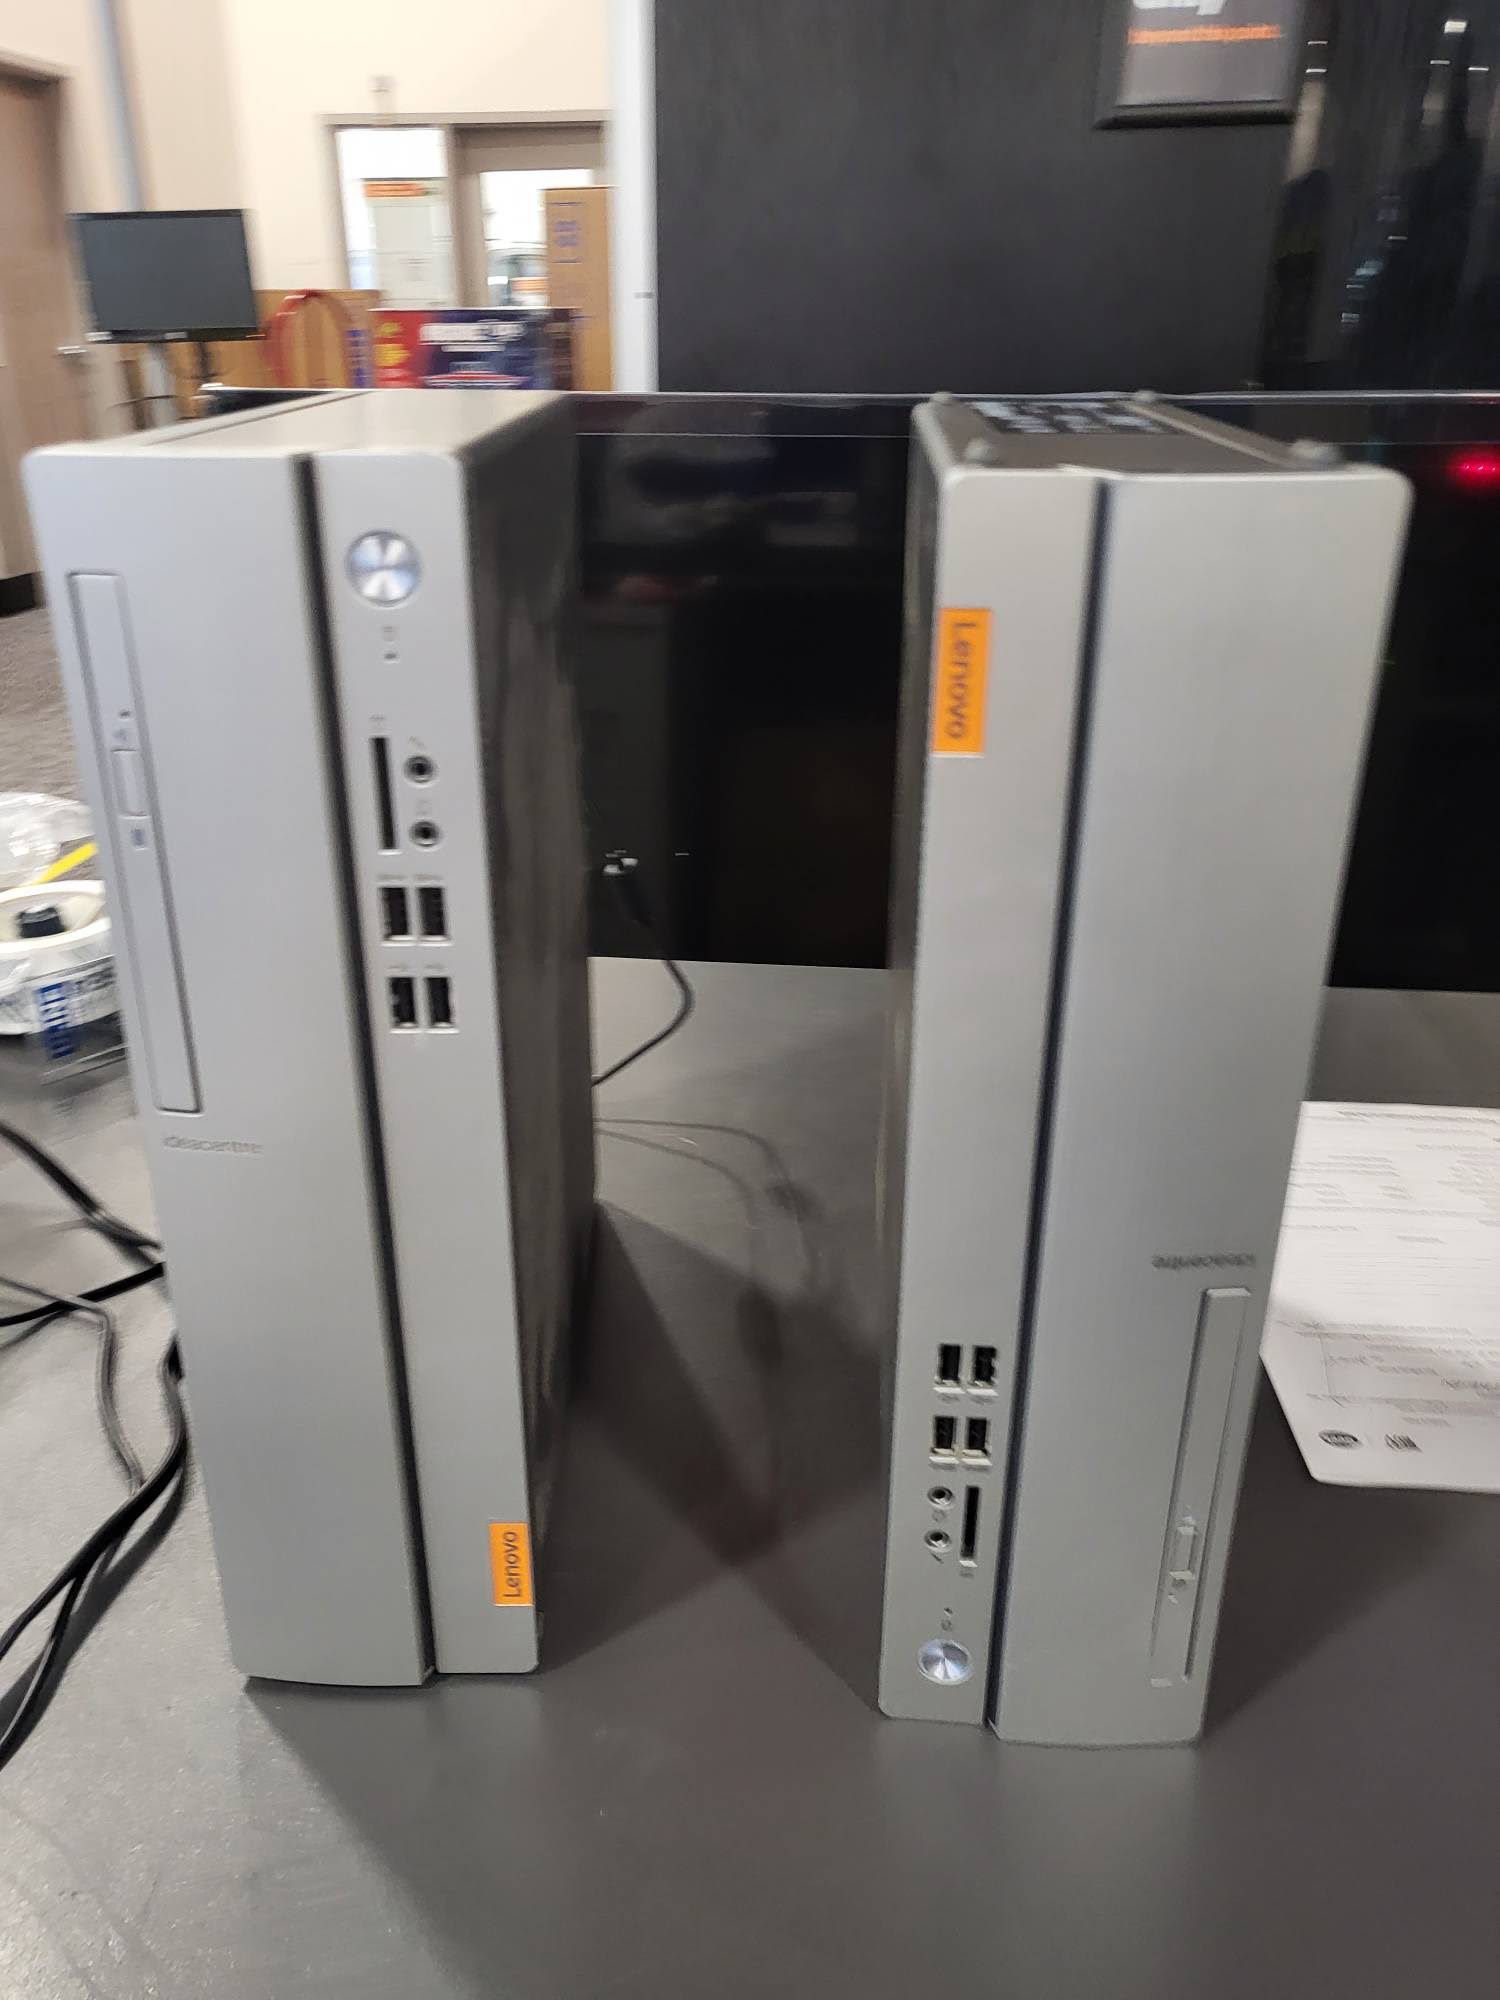 2 Lenovo Computer Towers